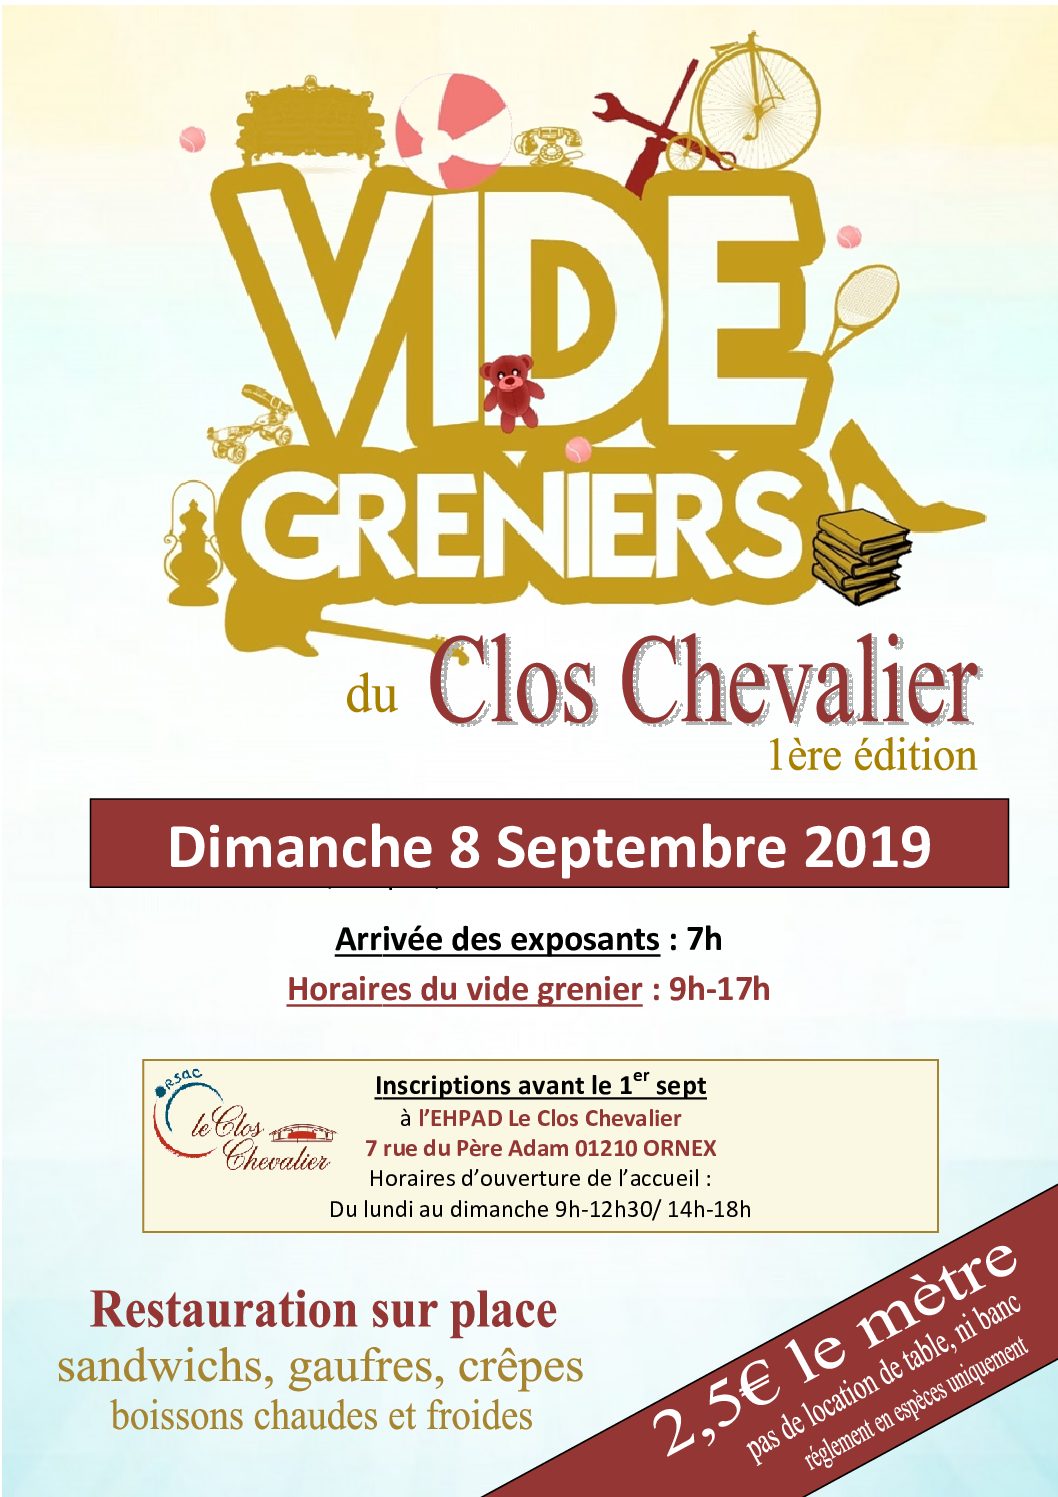 VIDE GRENIERS du Clos Chevalier – 1ère édition – Dimanche 8 Septembre 2019